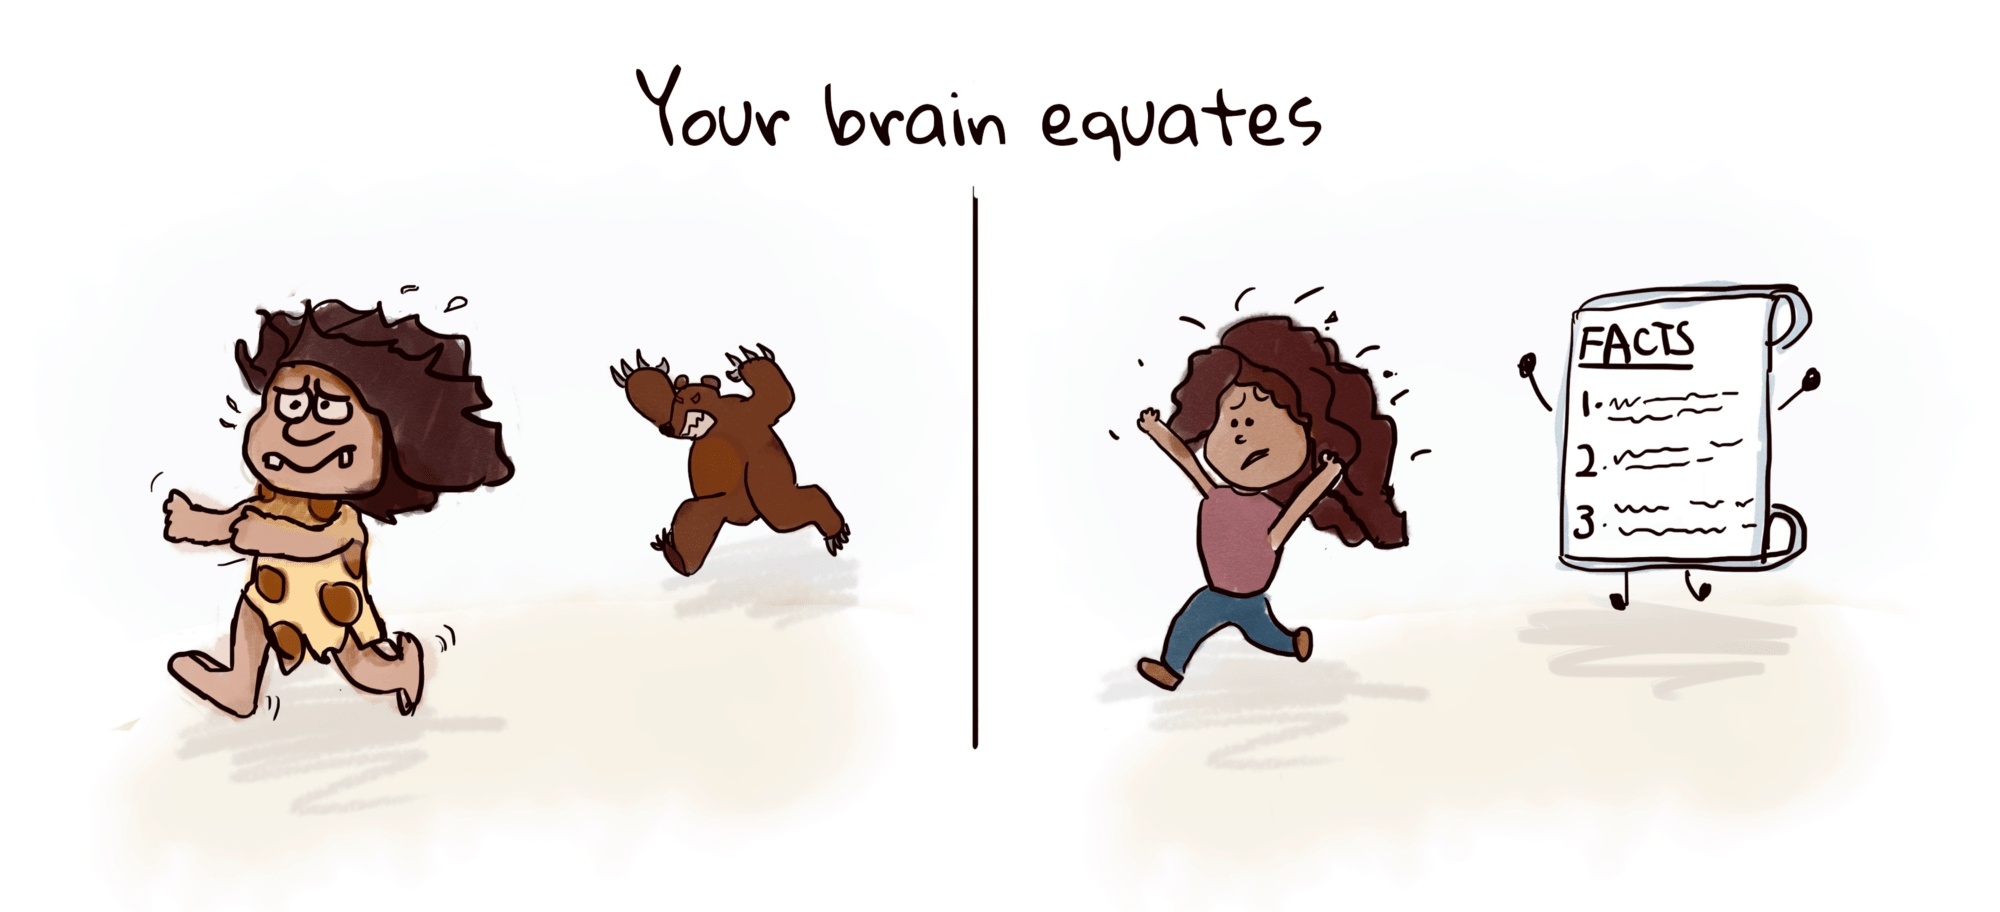 Your brain equates